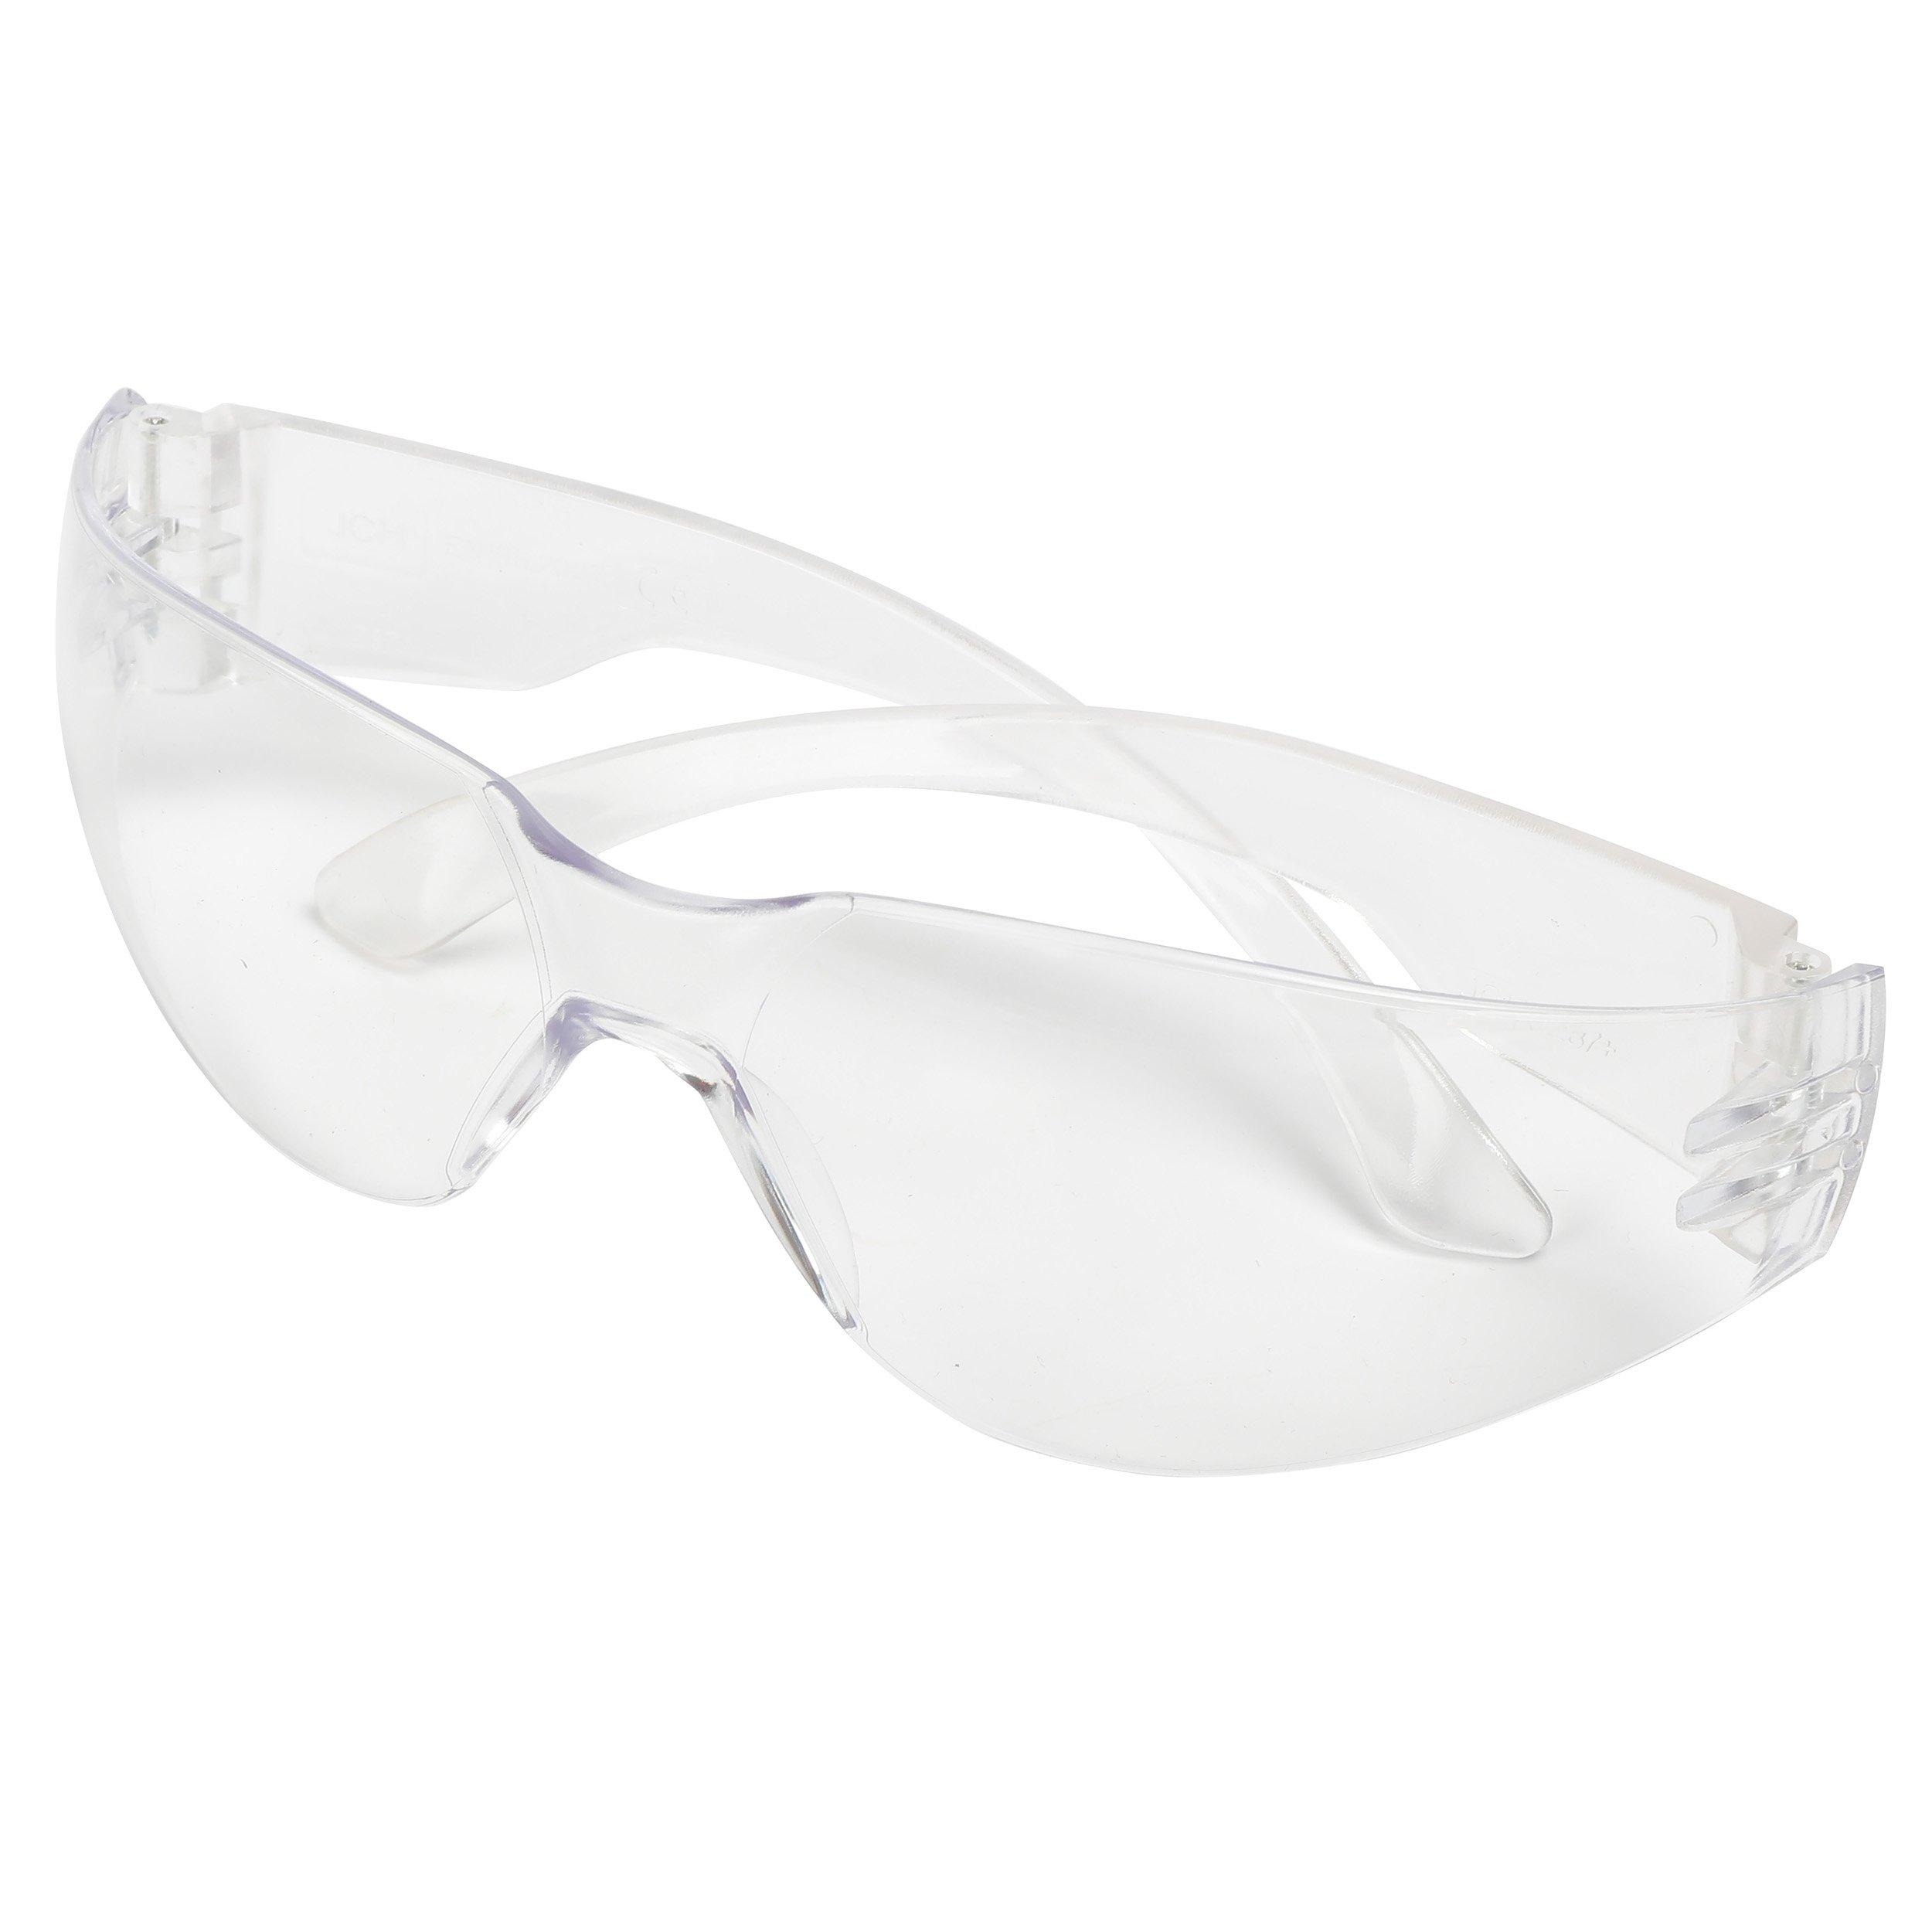 Goldblatt Safety Glasses